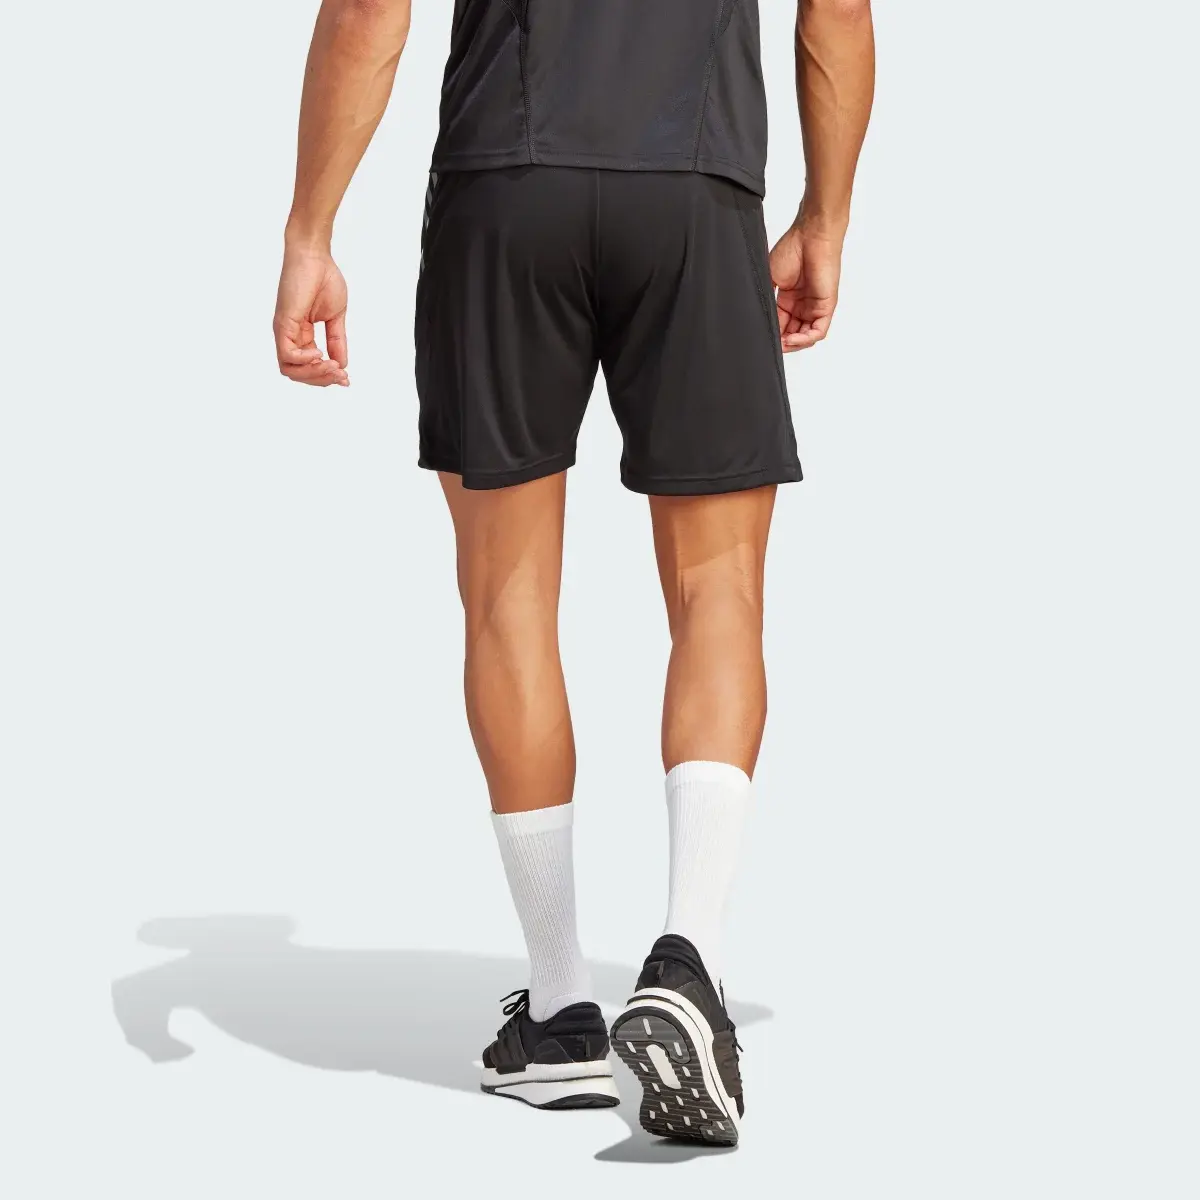 Adidas All Blacks Rugby Gym Shorts. 2